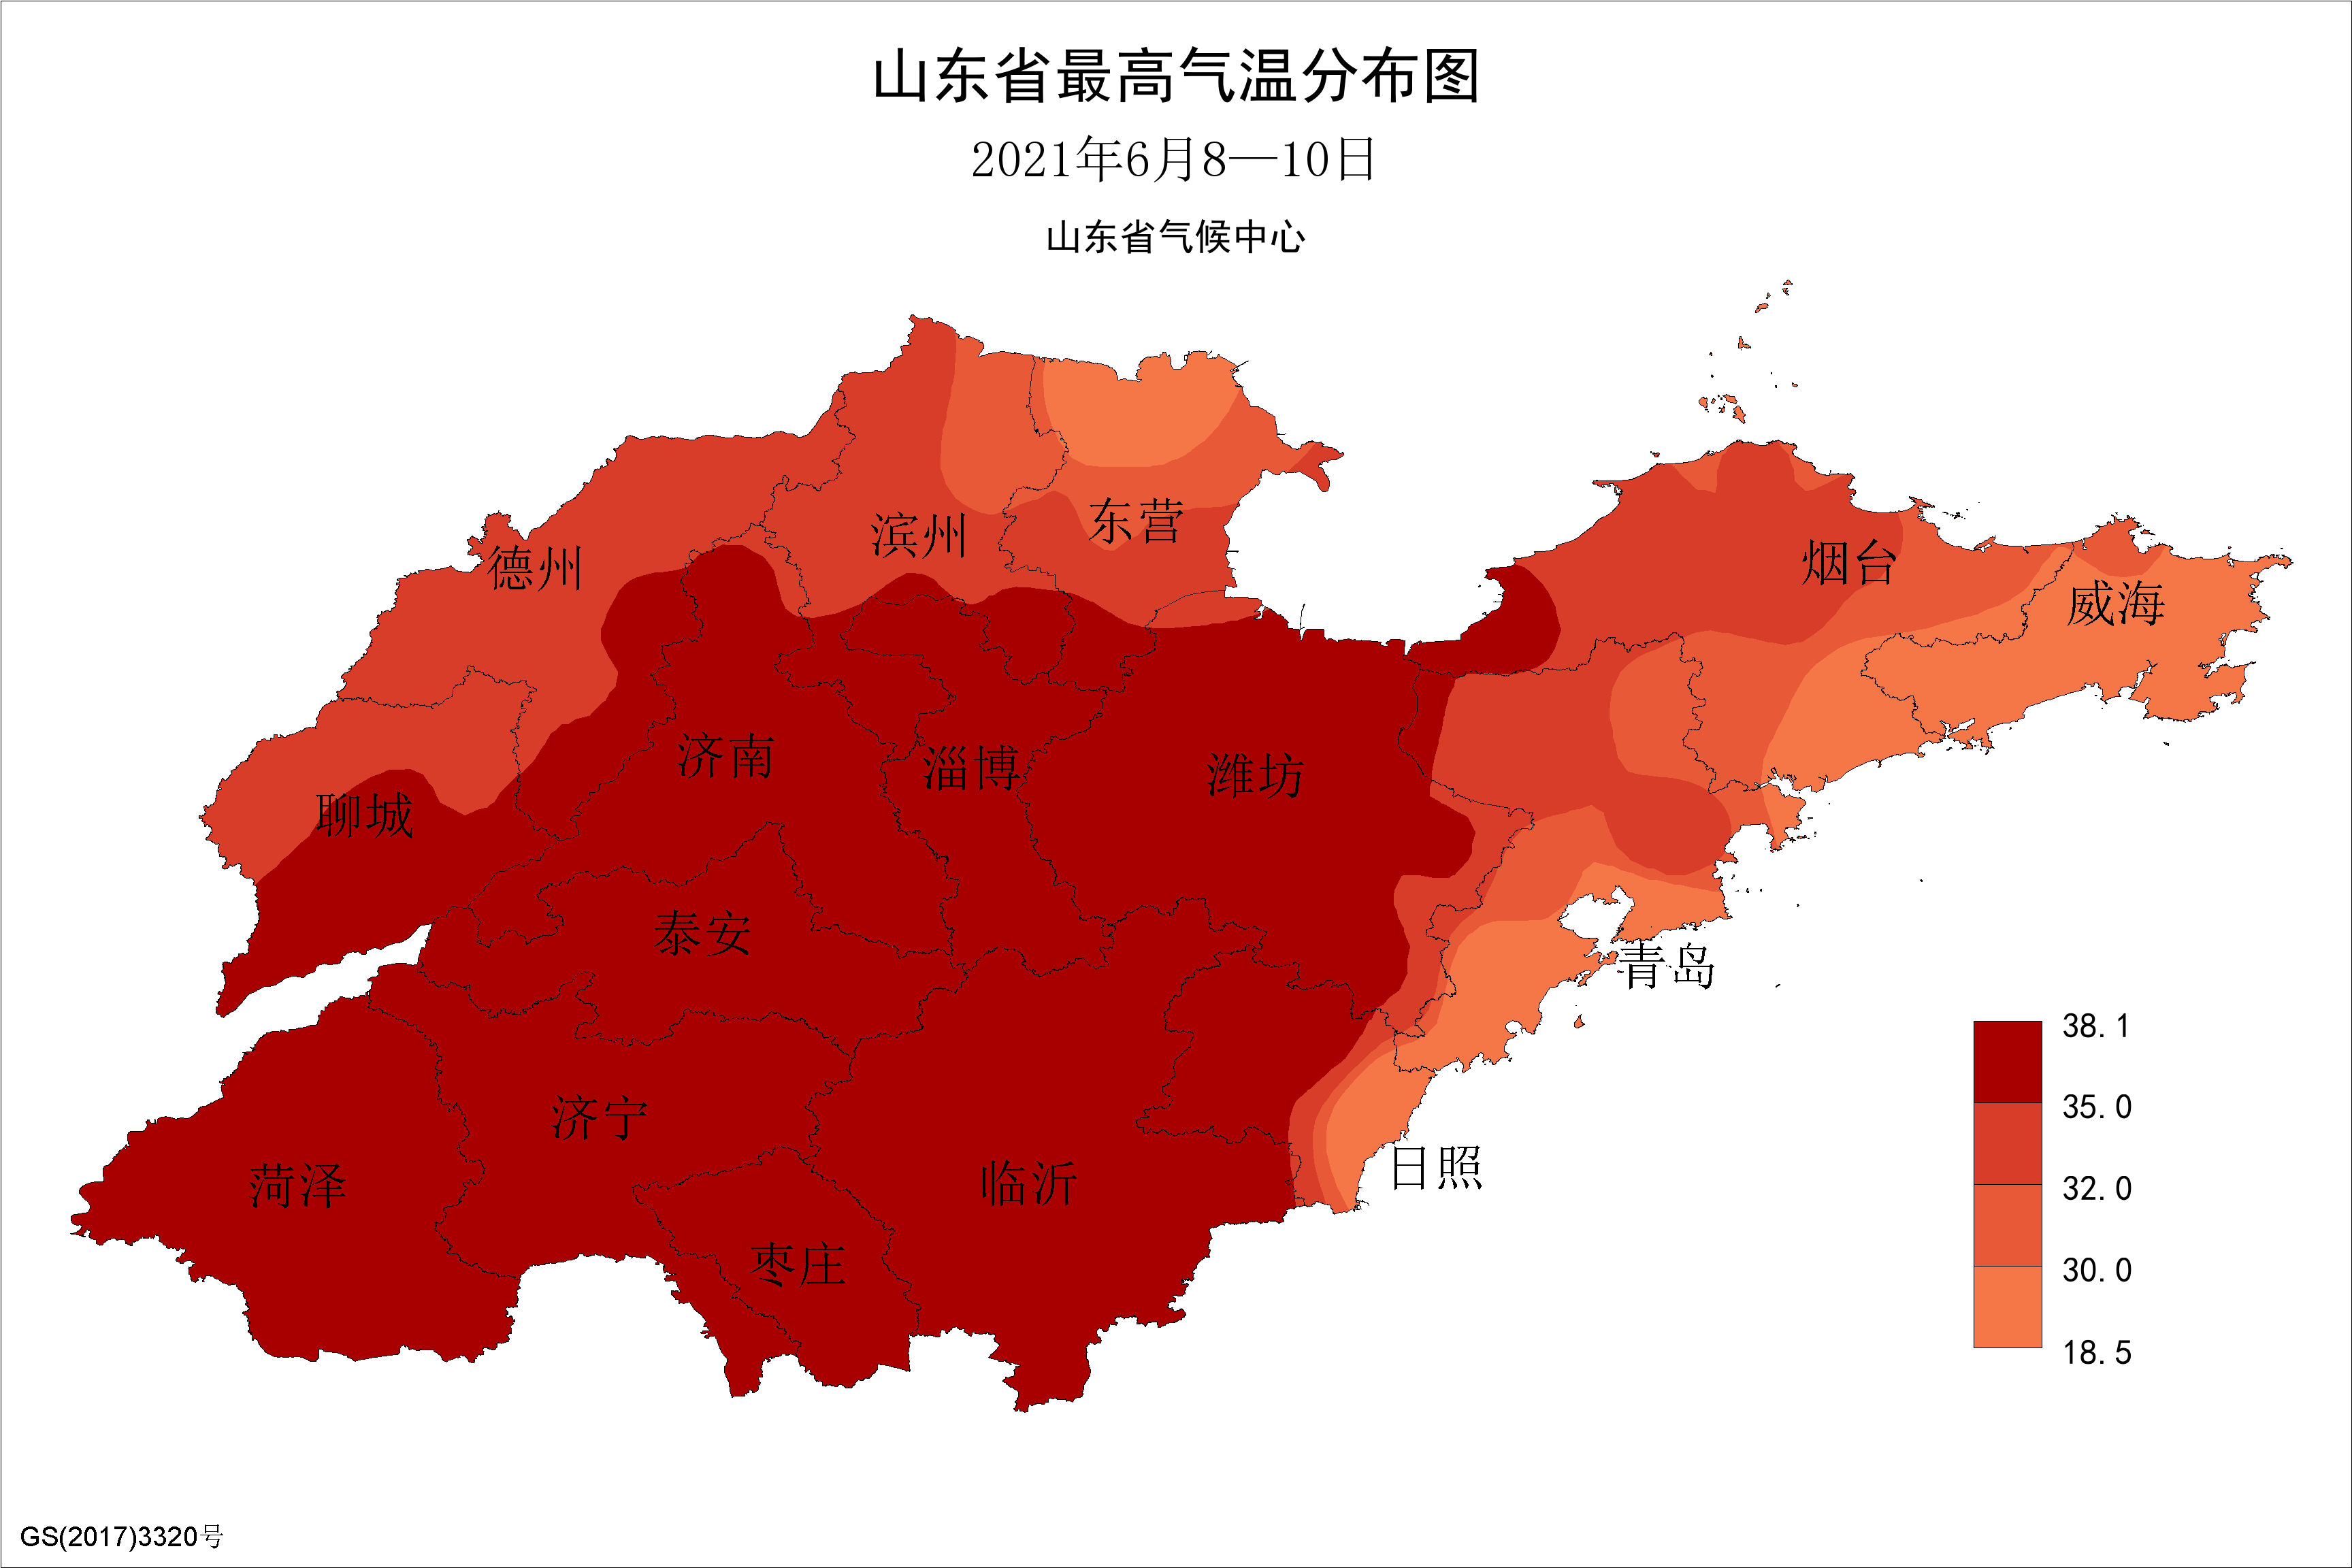 2021年6月8—10日山东省最高气温分布图(℃)